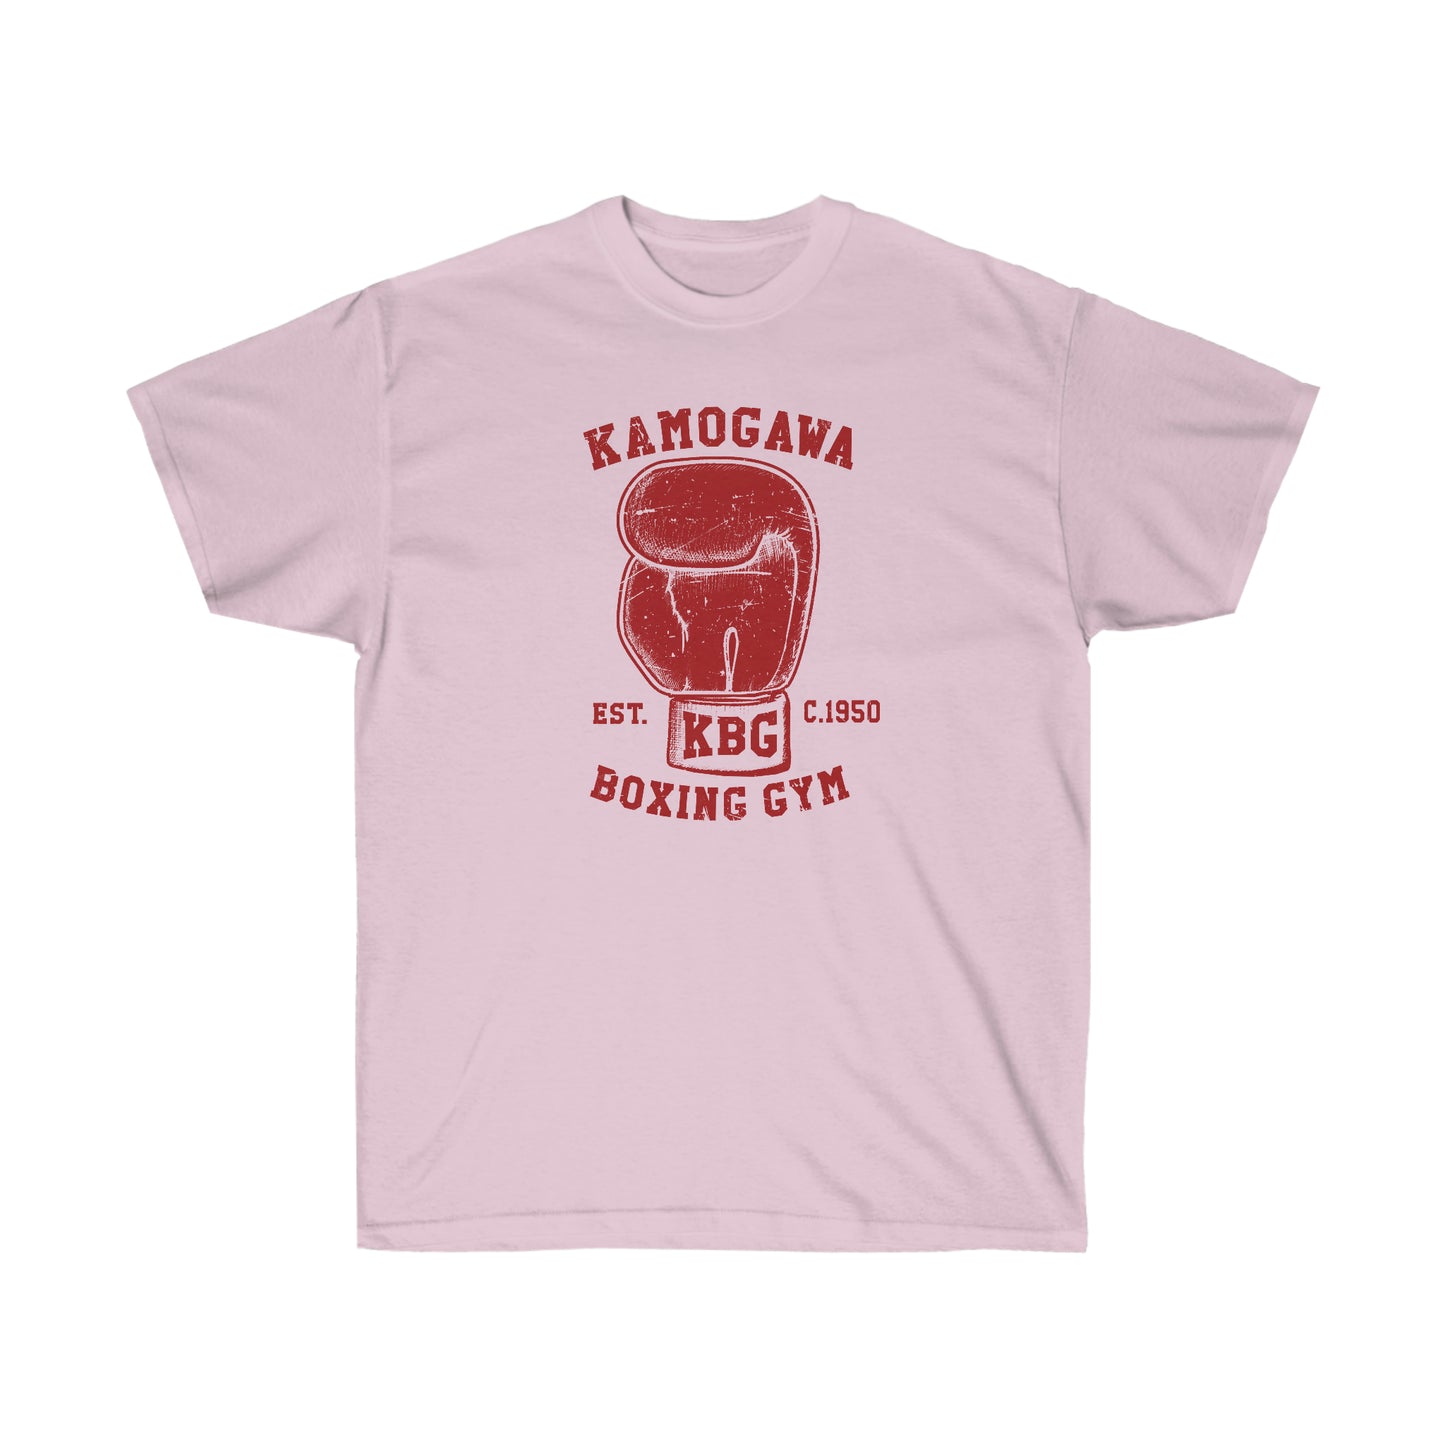 KBG Boxing Gym shirt Kamogawas Vintage Design T-Shirt